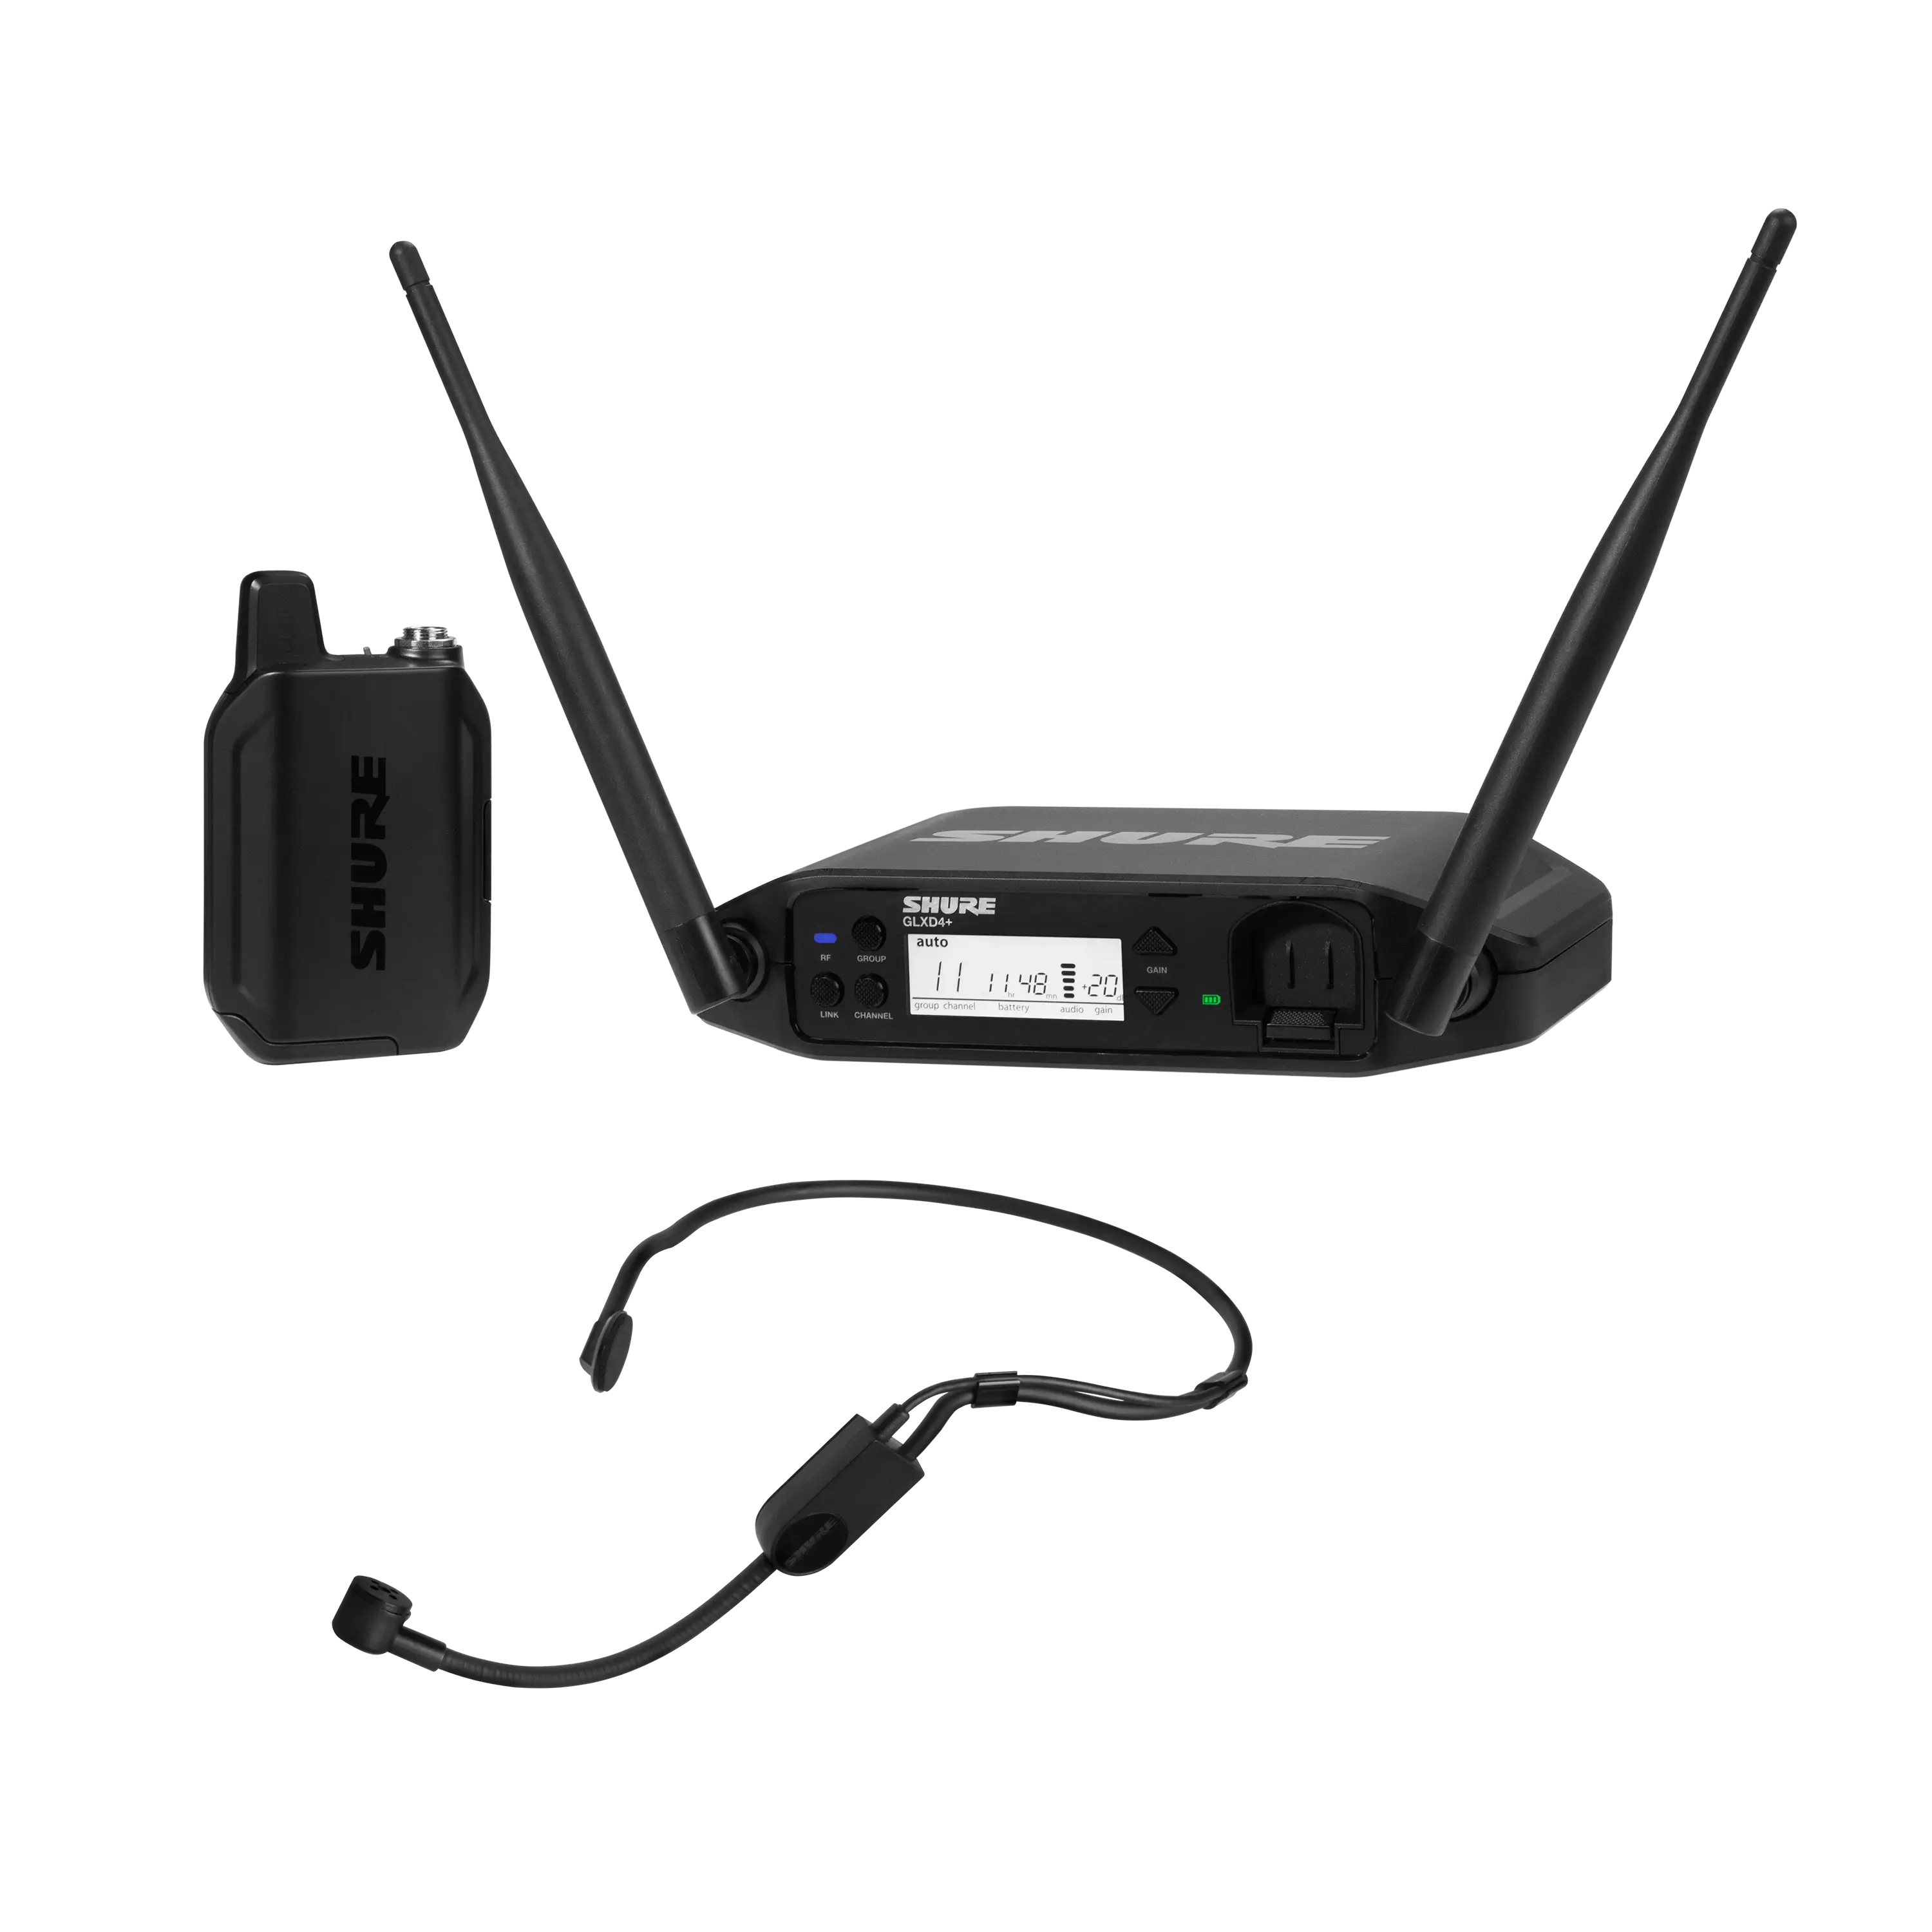 GLXD14+/PGA31-Z3 Digital Wireless Headset System with PGA31 Headset Microphone